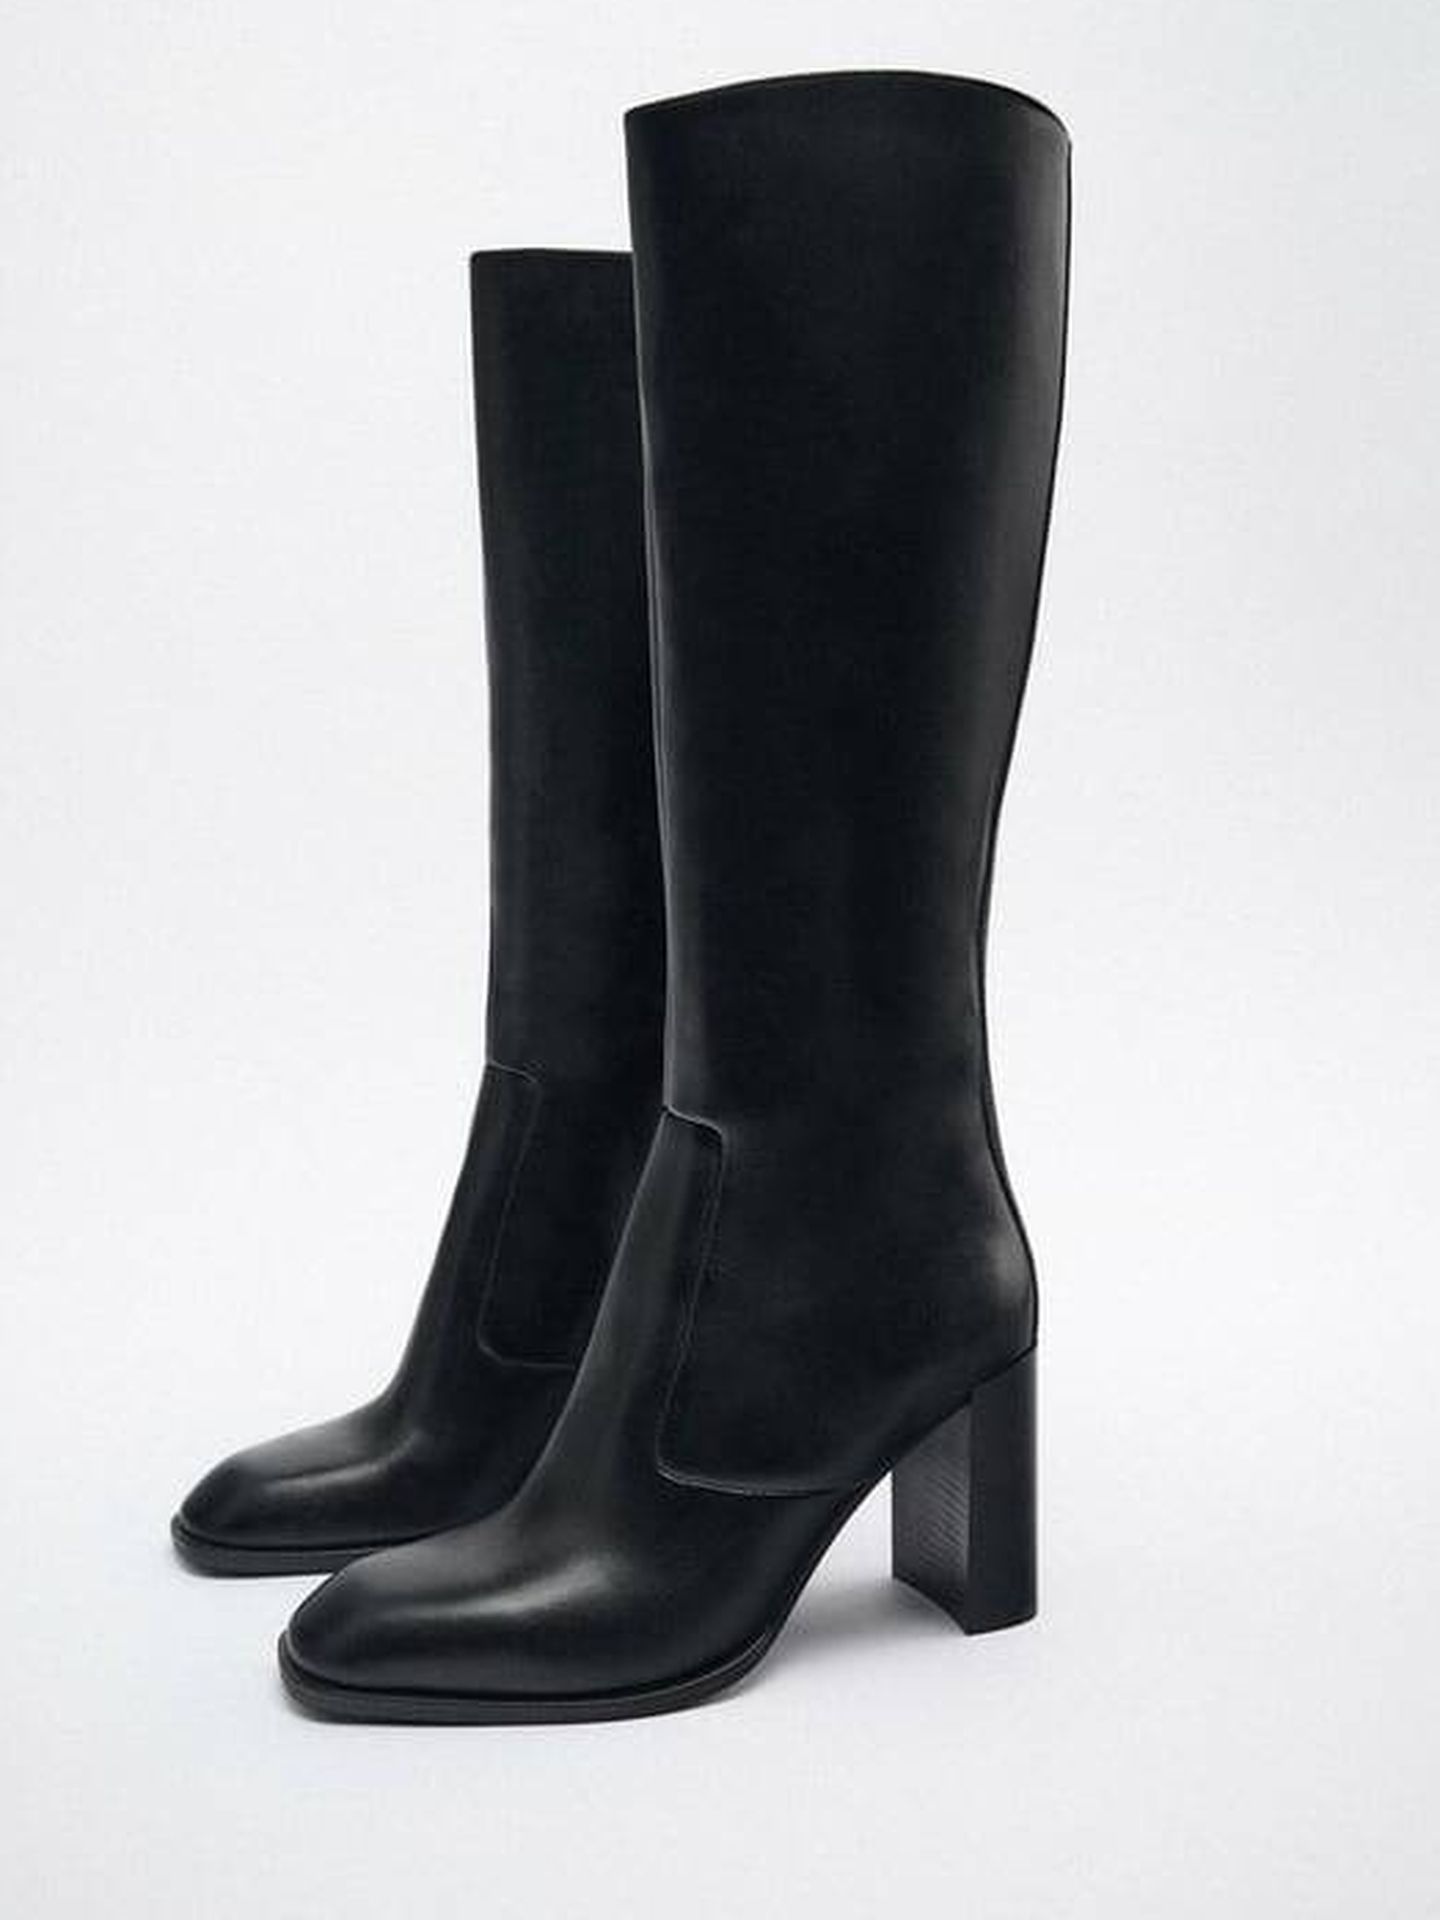 Las botas altas de Zara para tu nuevo vestido marrón. (Cortesía)